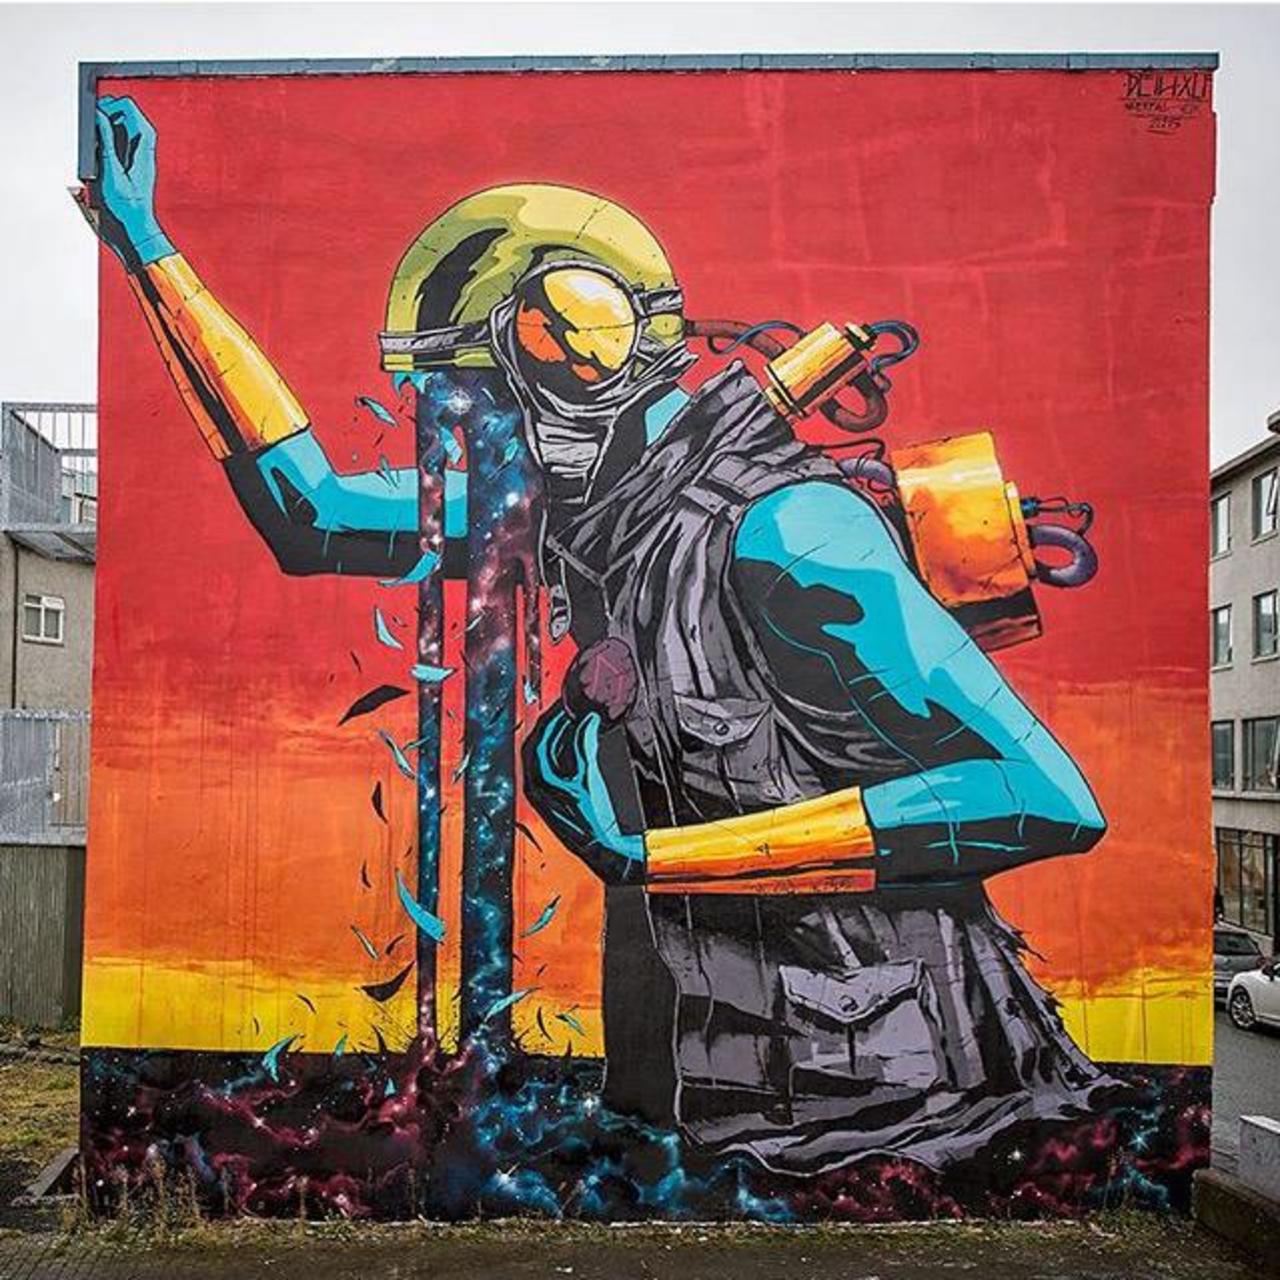 Street Art by Deih in Reykjavik 

#art #graffiti #mural #streetart https://t.co/3Drs2OWnHL